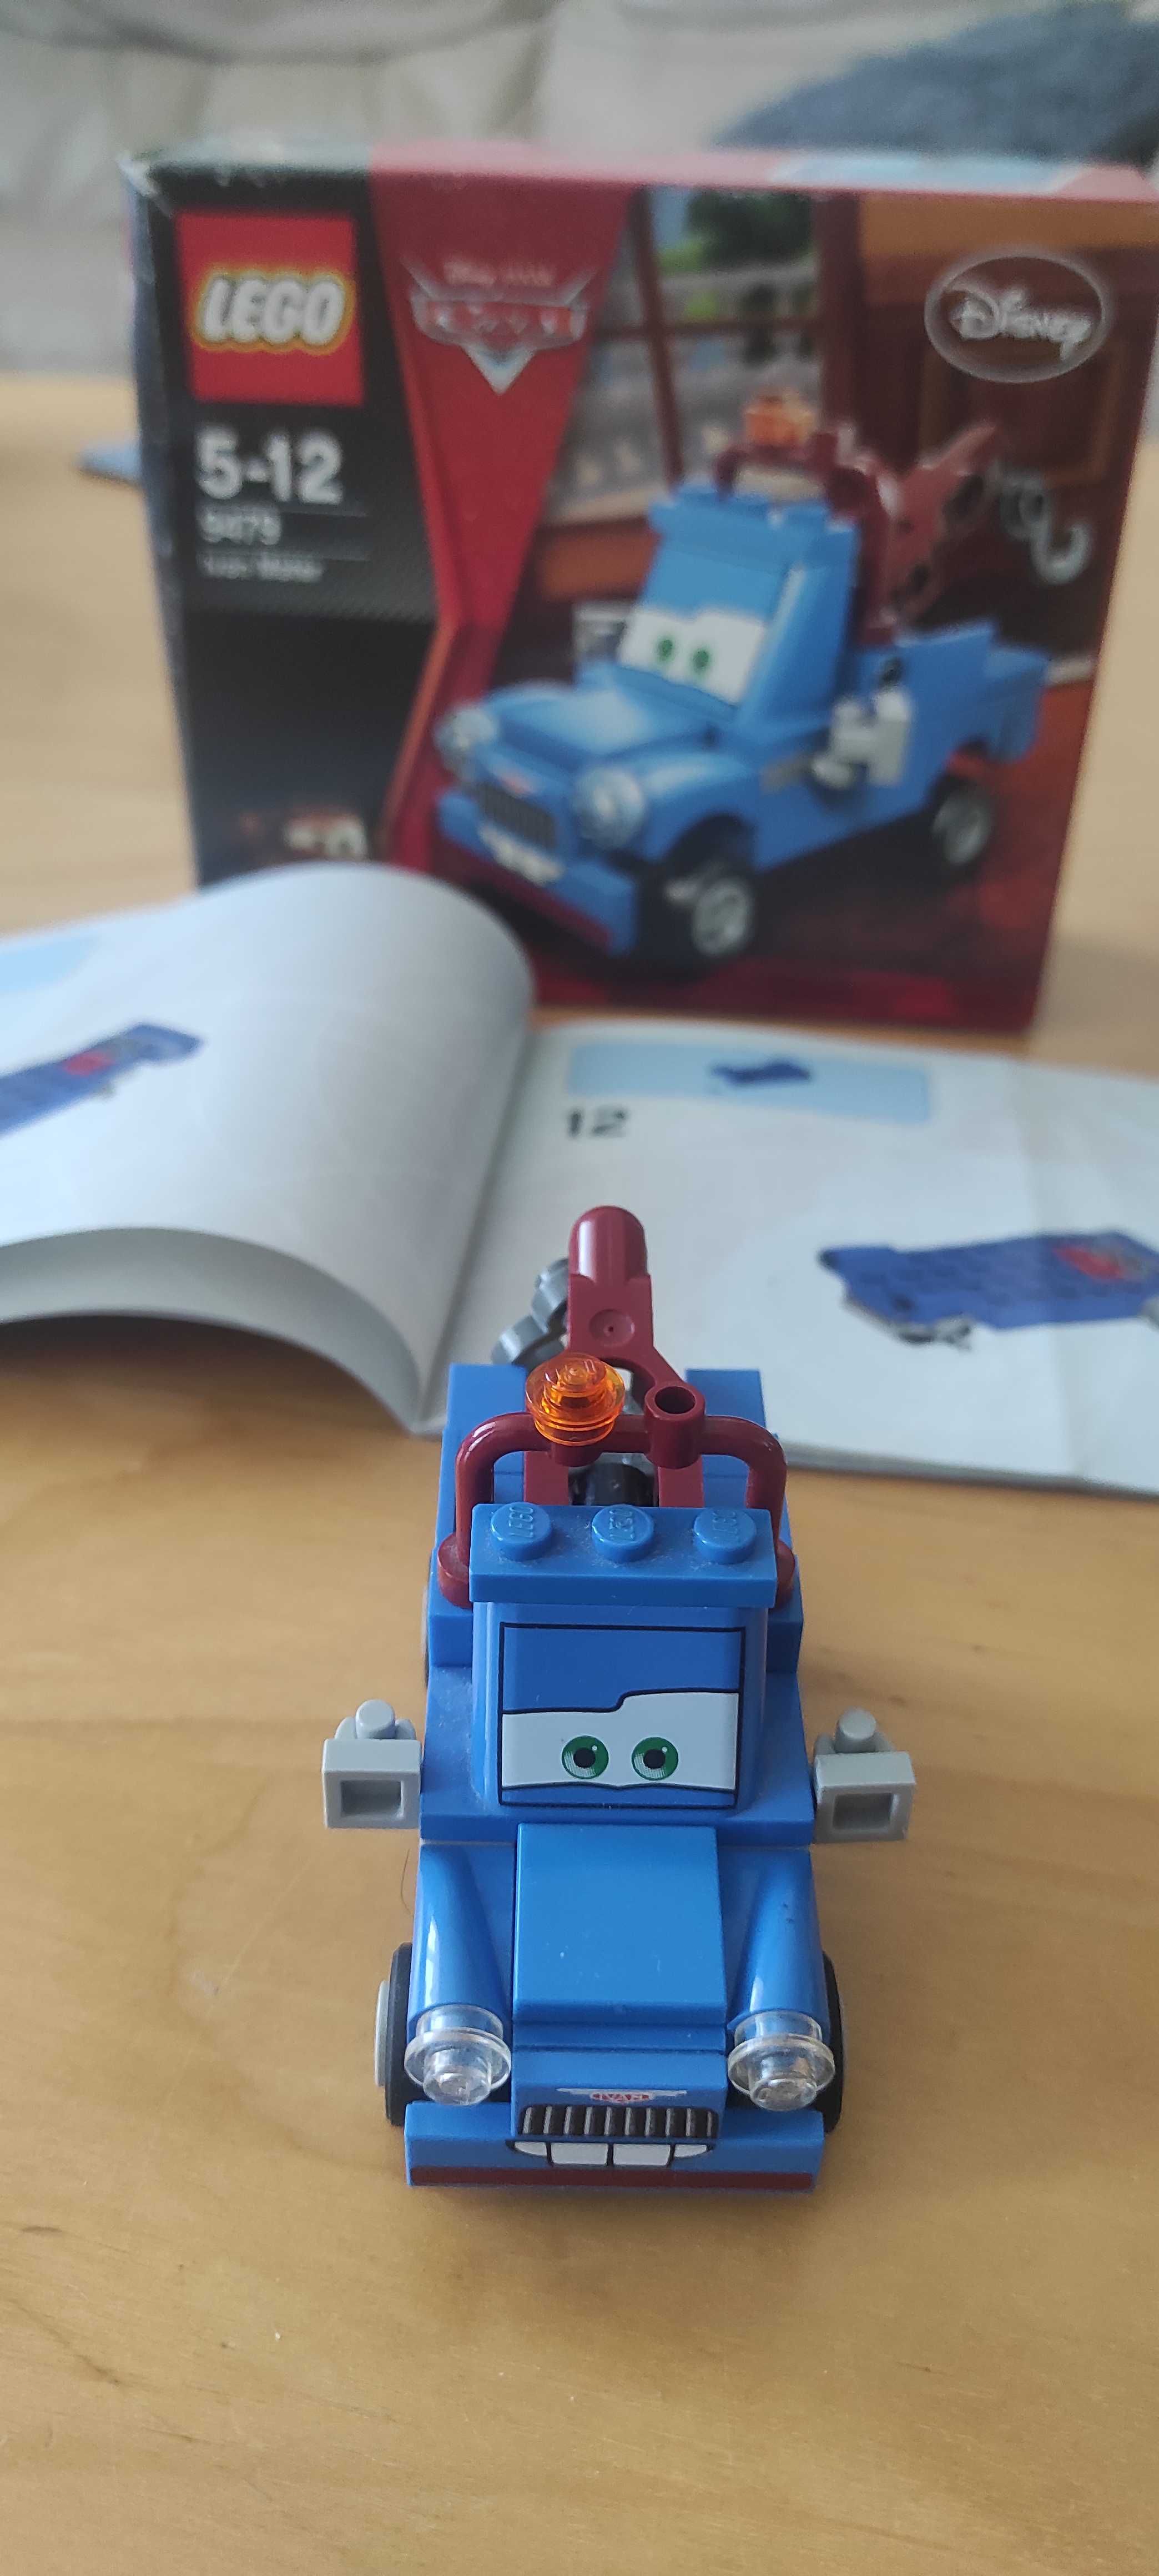 Lego 9479 Cars Auta Złomek zestaw z instrukcją i pudełkiem prezent